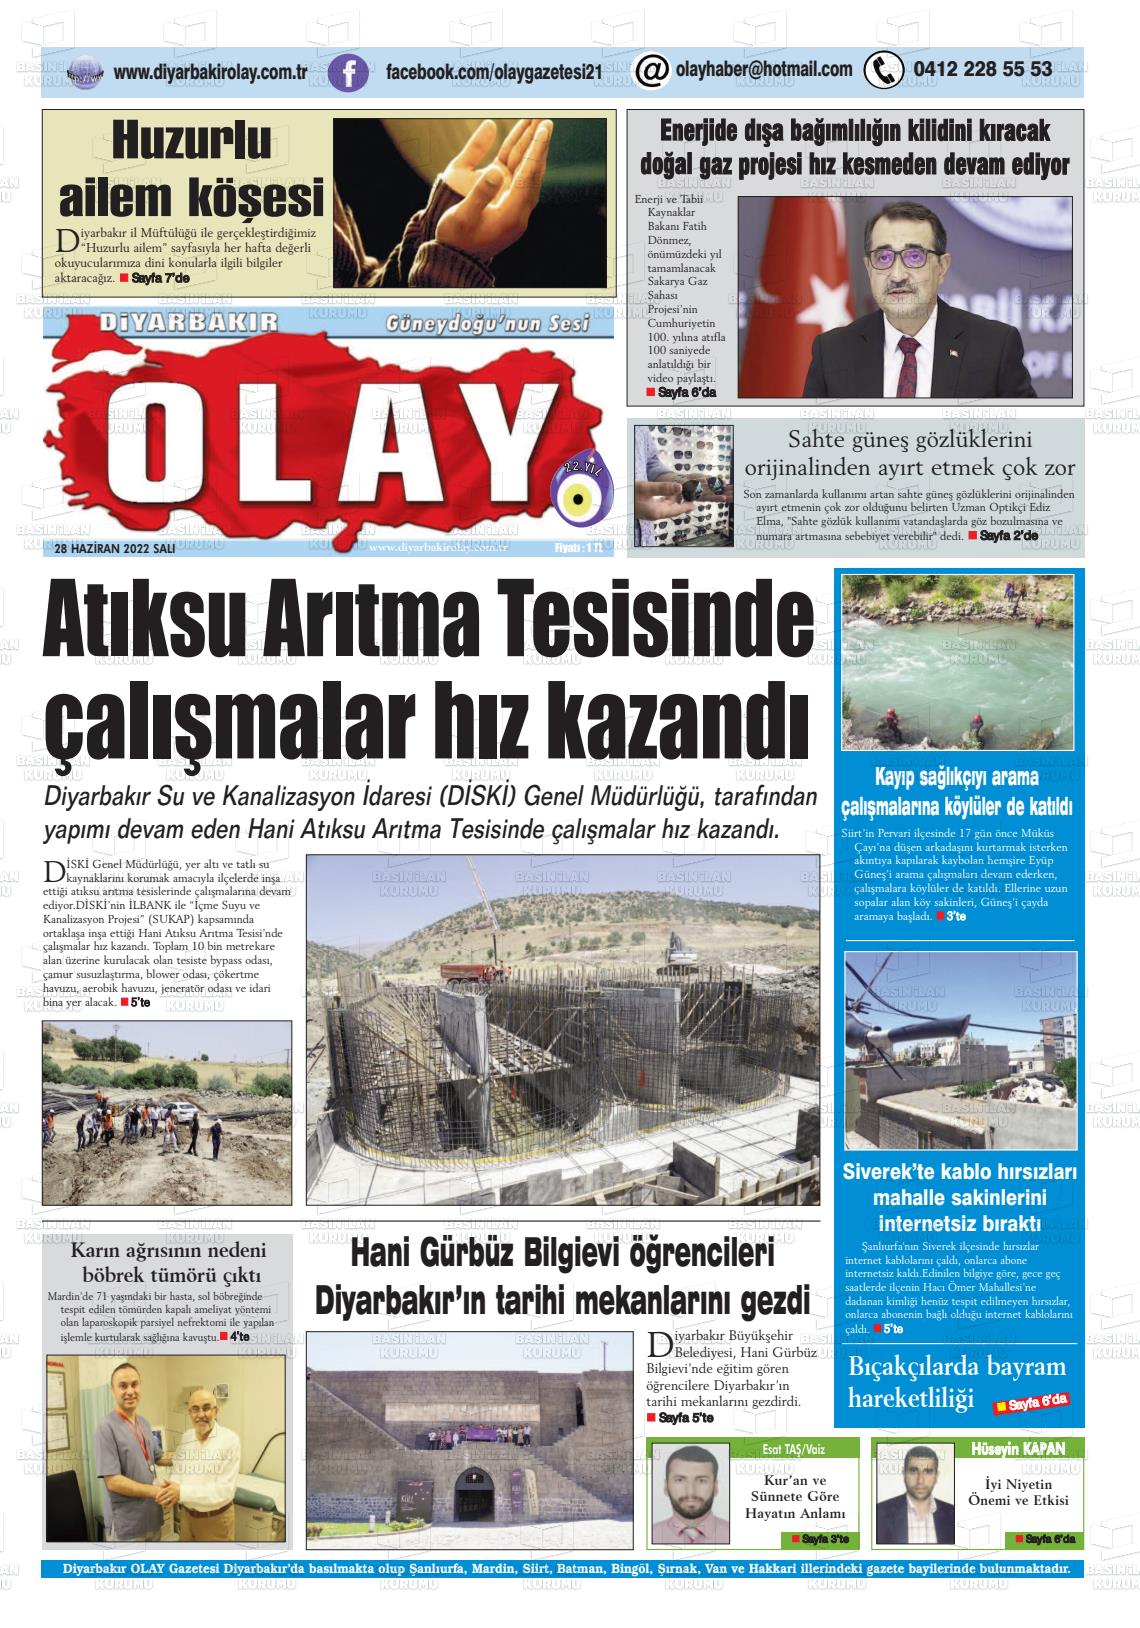 28 Haziran 2022 Diyarbakir Olay Gazete Manşeti